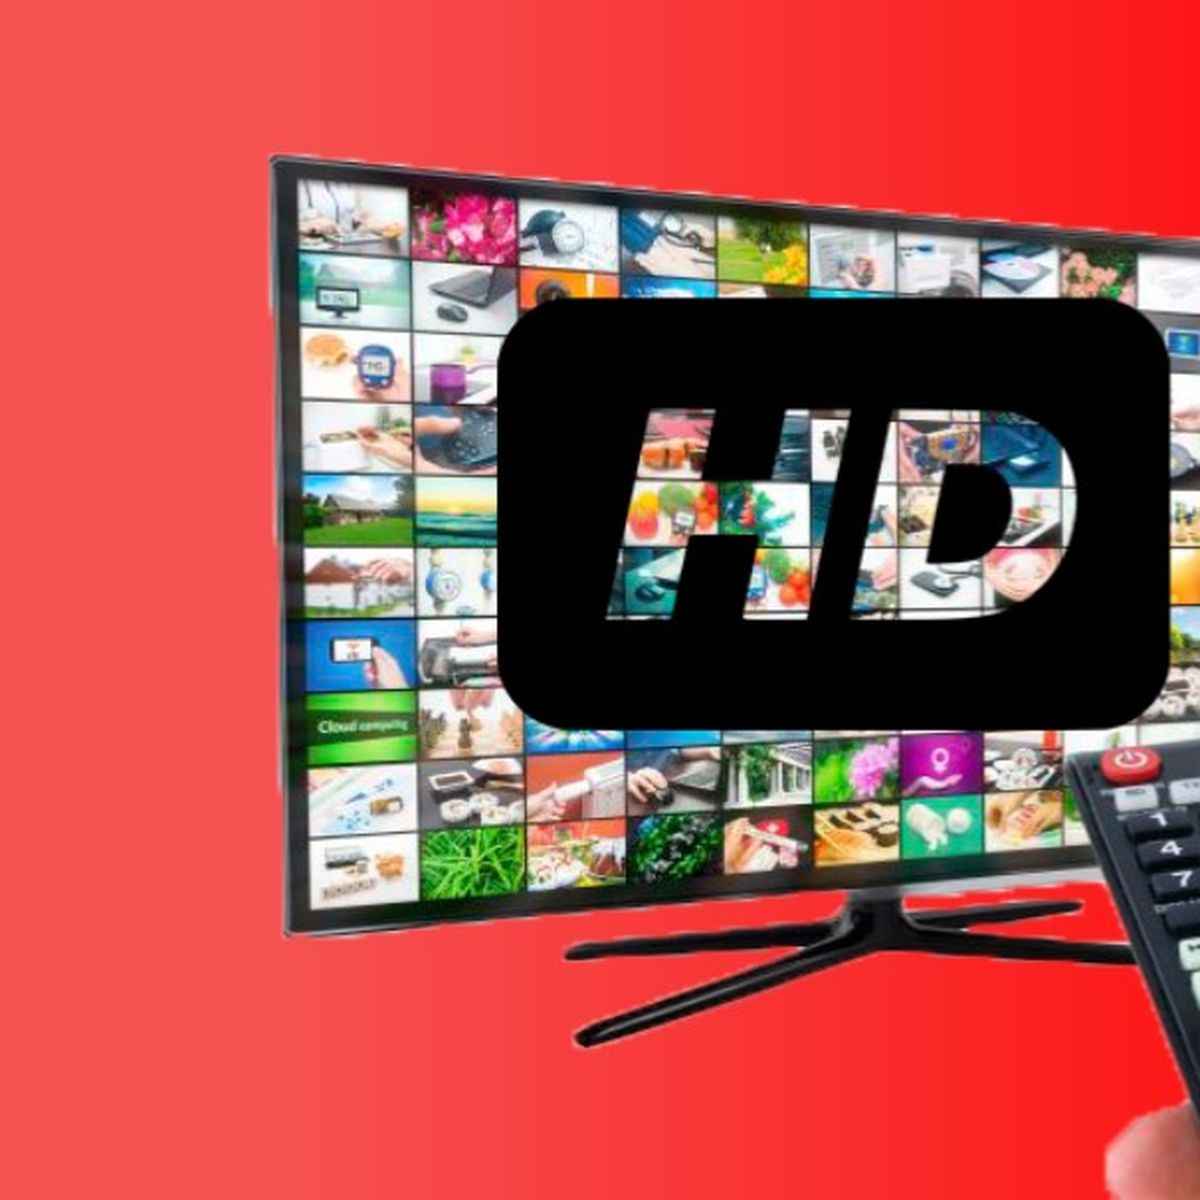 TDT 4K debutará con el canal La 1 UHD en Febrero de 2024